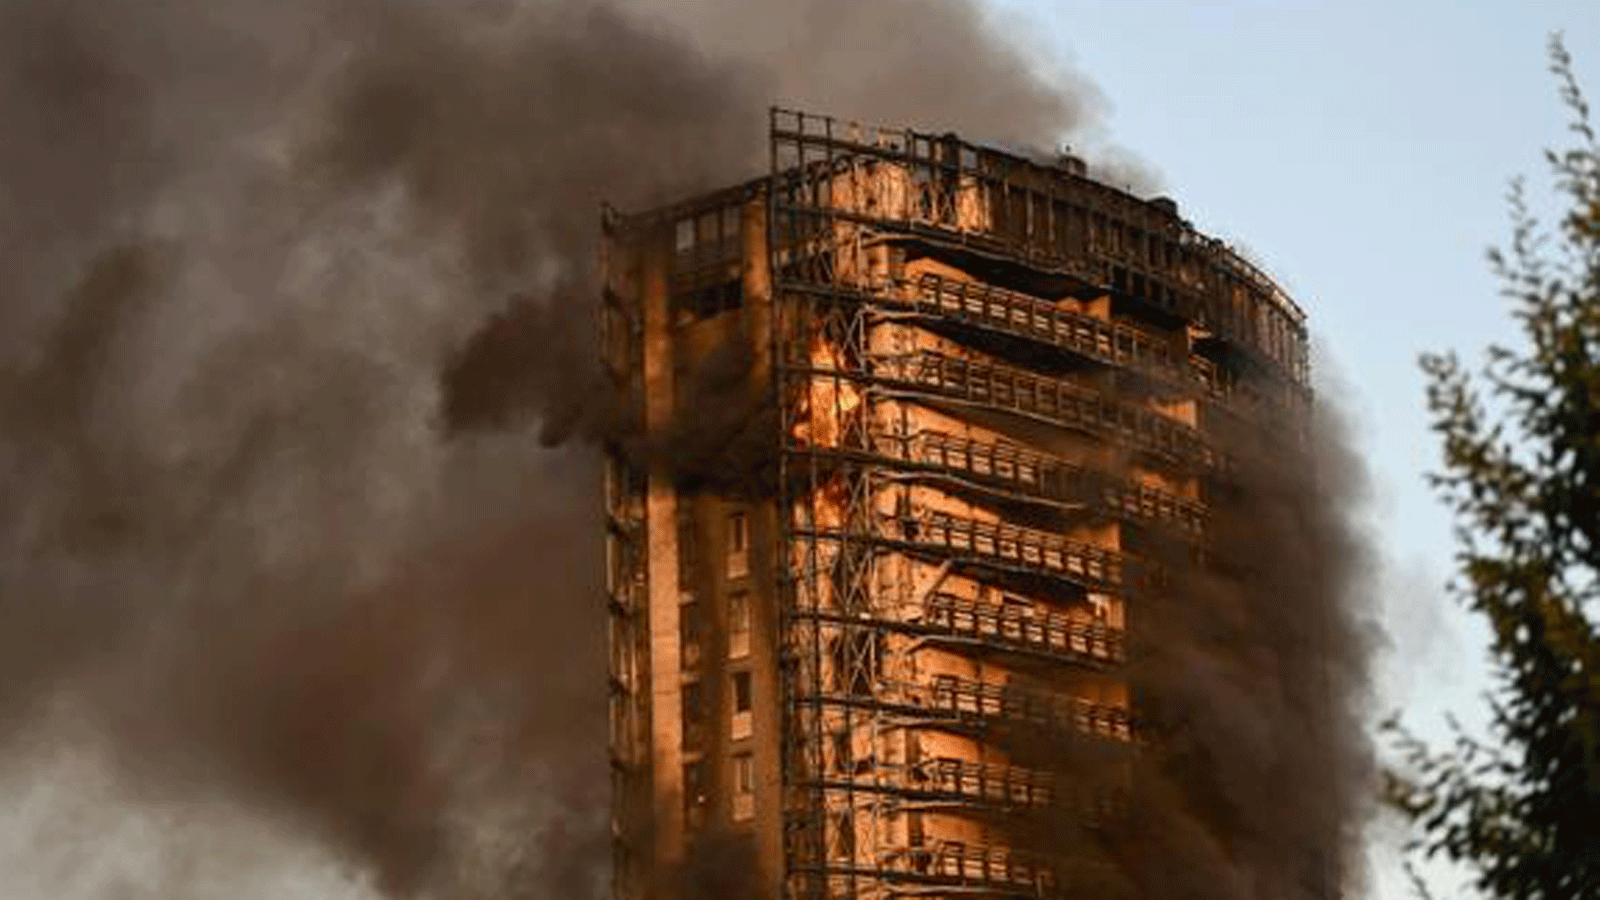 النيران انتشرت في الطوابق العليا قبل انتقالها للسفلى في المبنى المشتعل في ميلانو. 29 آب/ أغسطس 2021